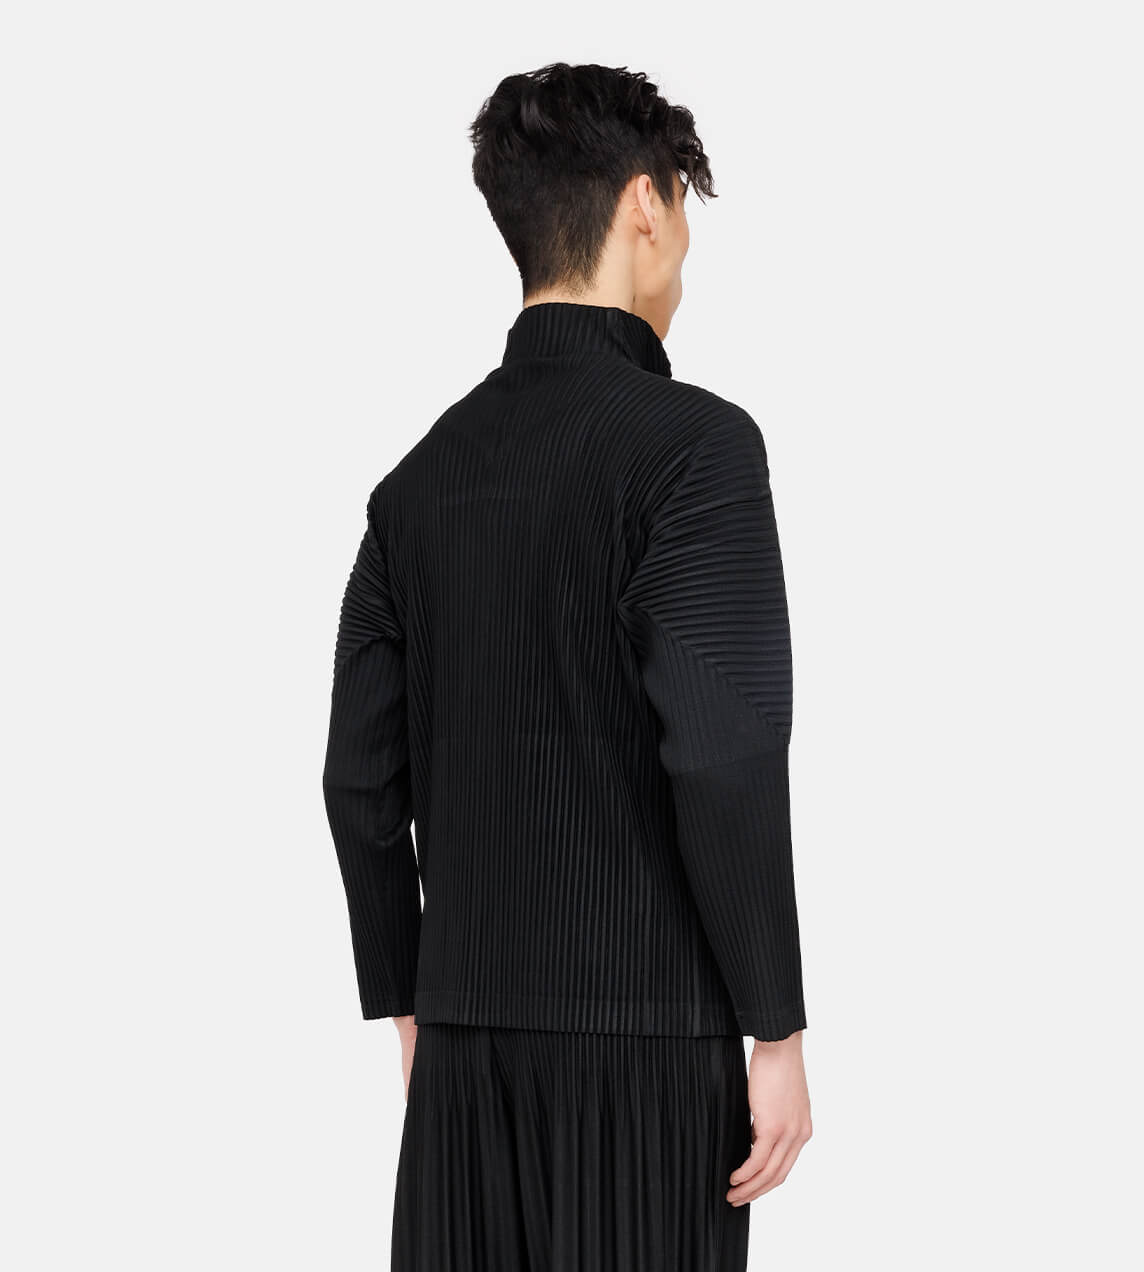 Homme Plisse Issey Miyake - Basic Zip Front Jacket Black